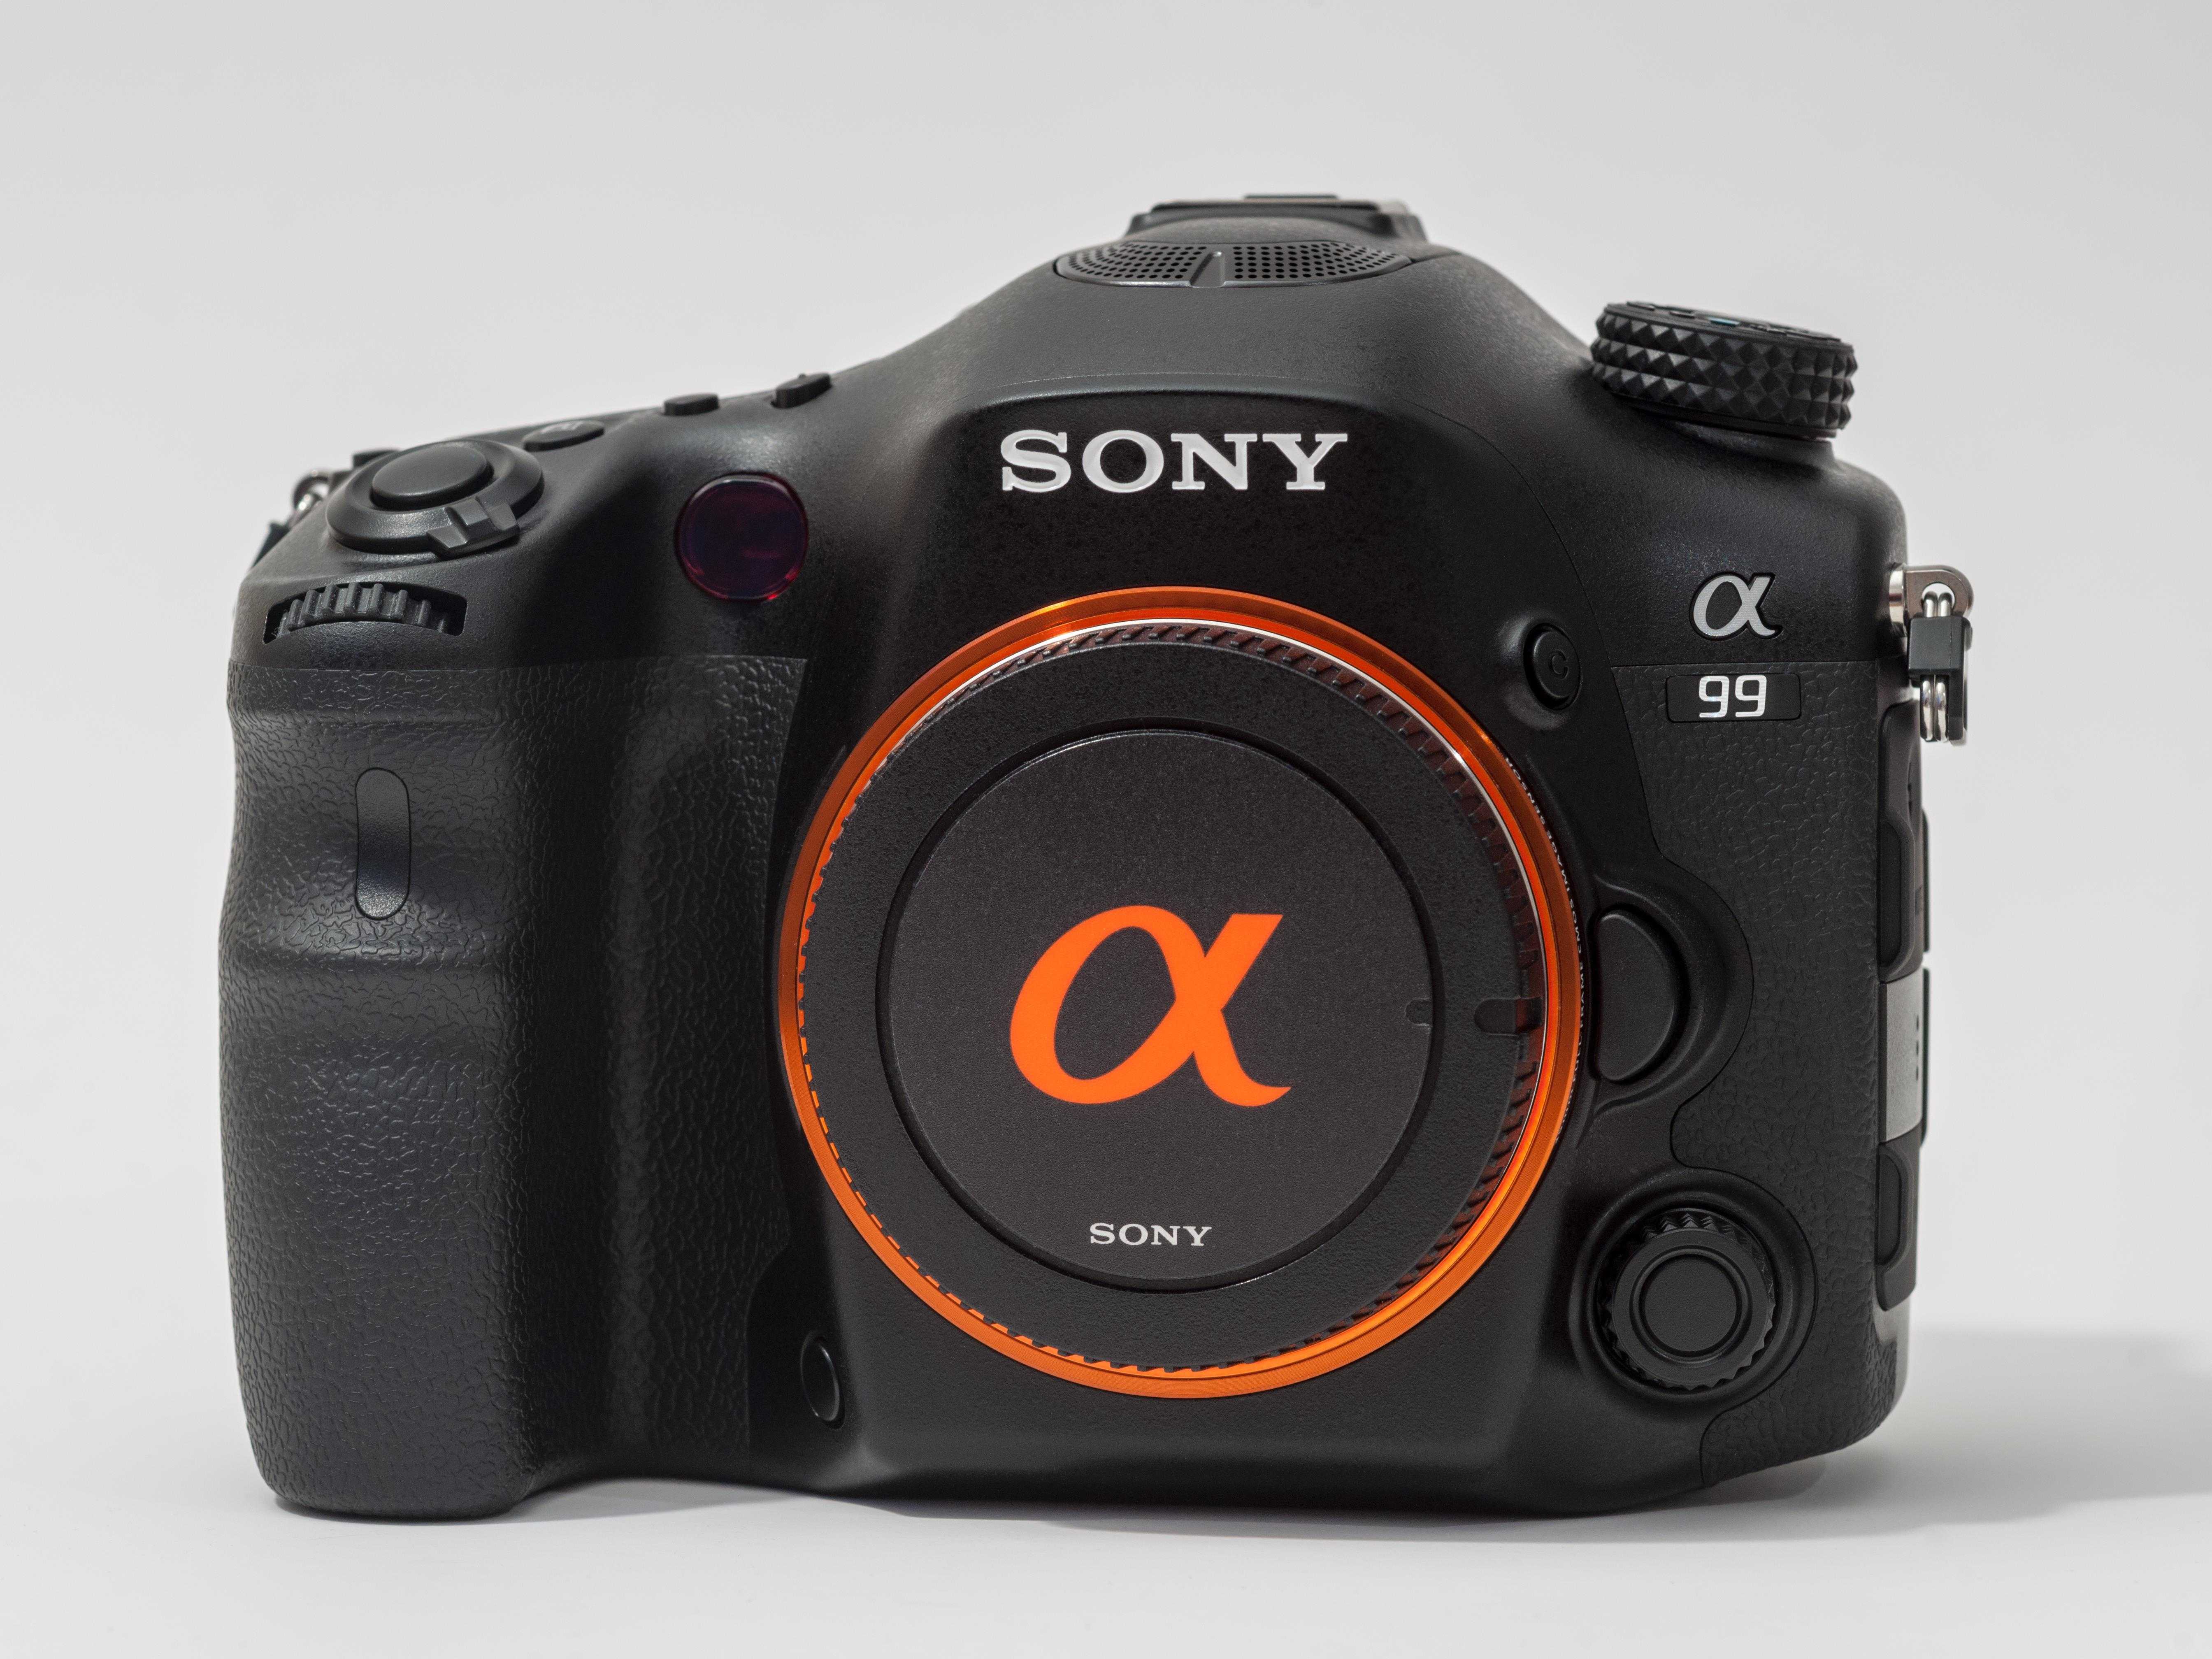 Цифровой фотоаппарат Sony SLT-A99 - подробные характеристики обзоры видео фото Цены в интернет-магазинах где можно купить цифровую фотоаппарат Sony SLT-A99